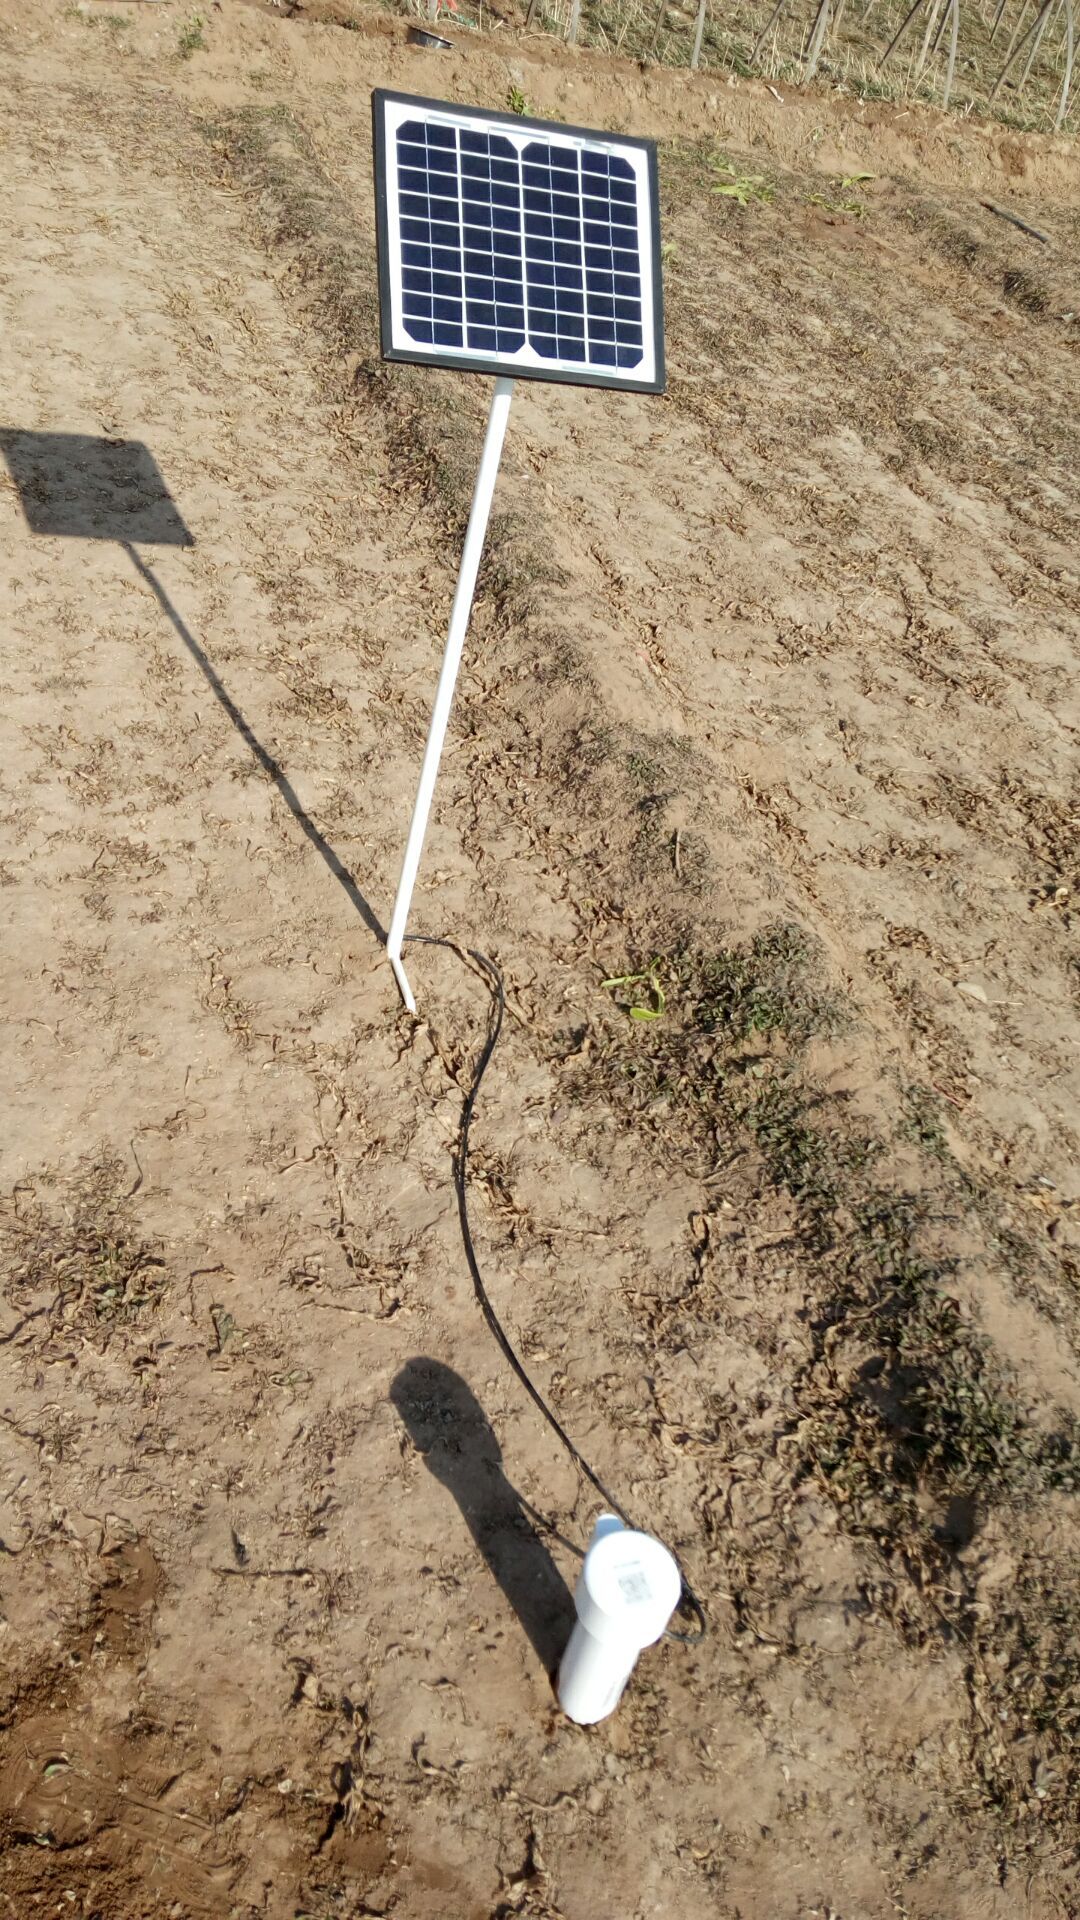 tdr土壤水分测量仪/土壤墒情测量仪